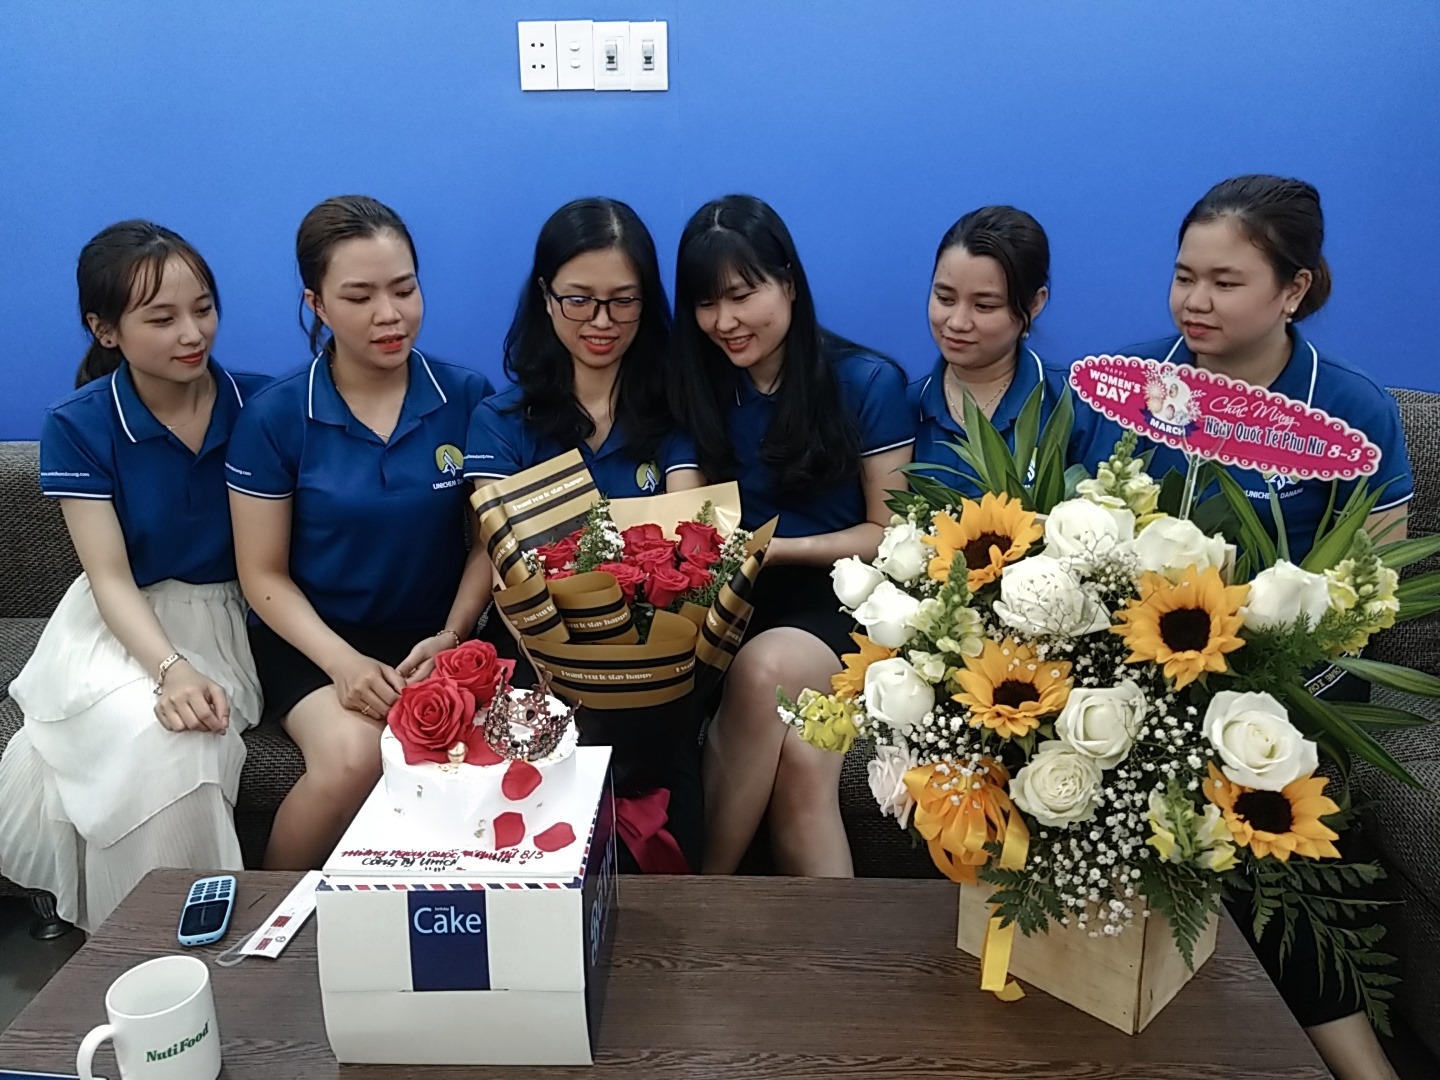 Bàn giao đơn hàng 500 áo cho công ty Unichem Đà Nẵng